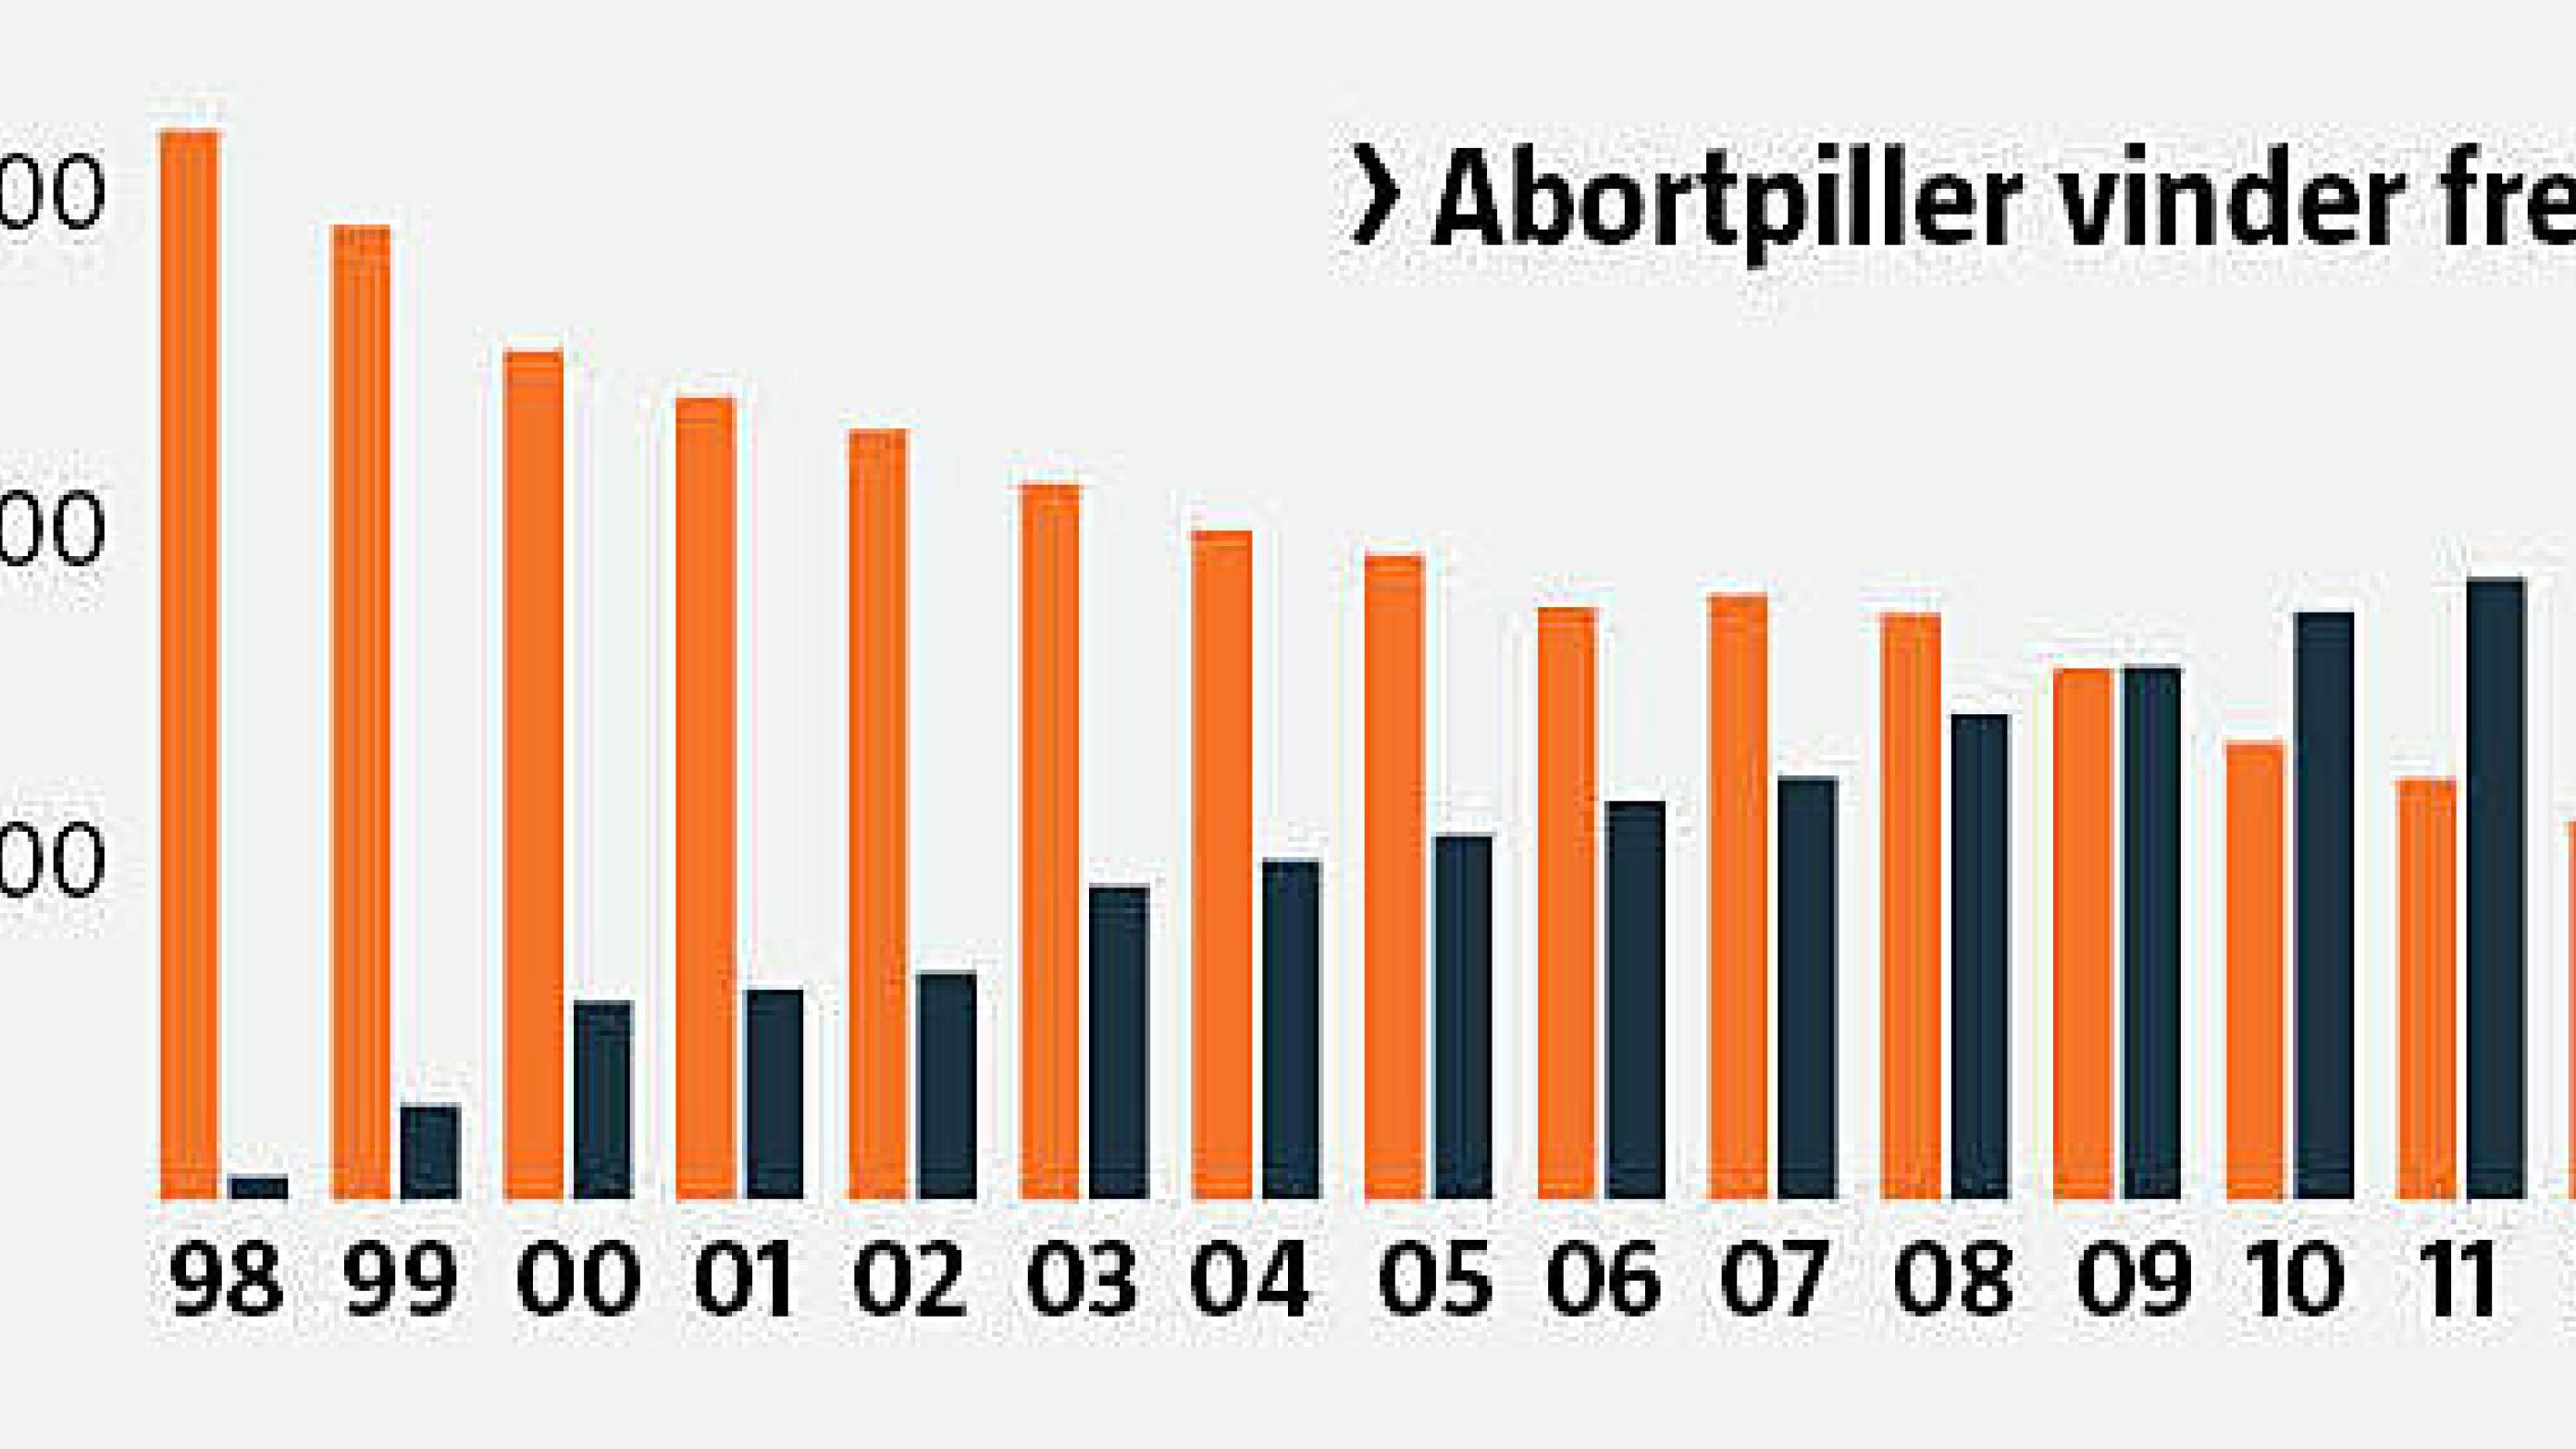 Abortpiller (sort) vinder frem, og kirurgiske aborter (orange) går tilbage.